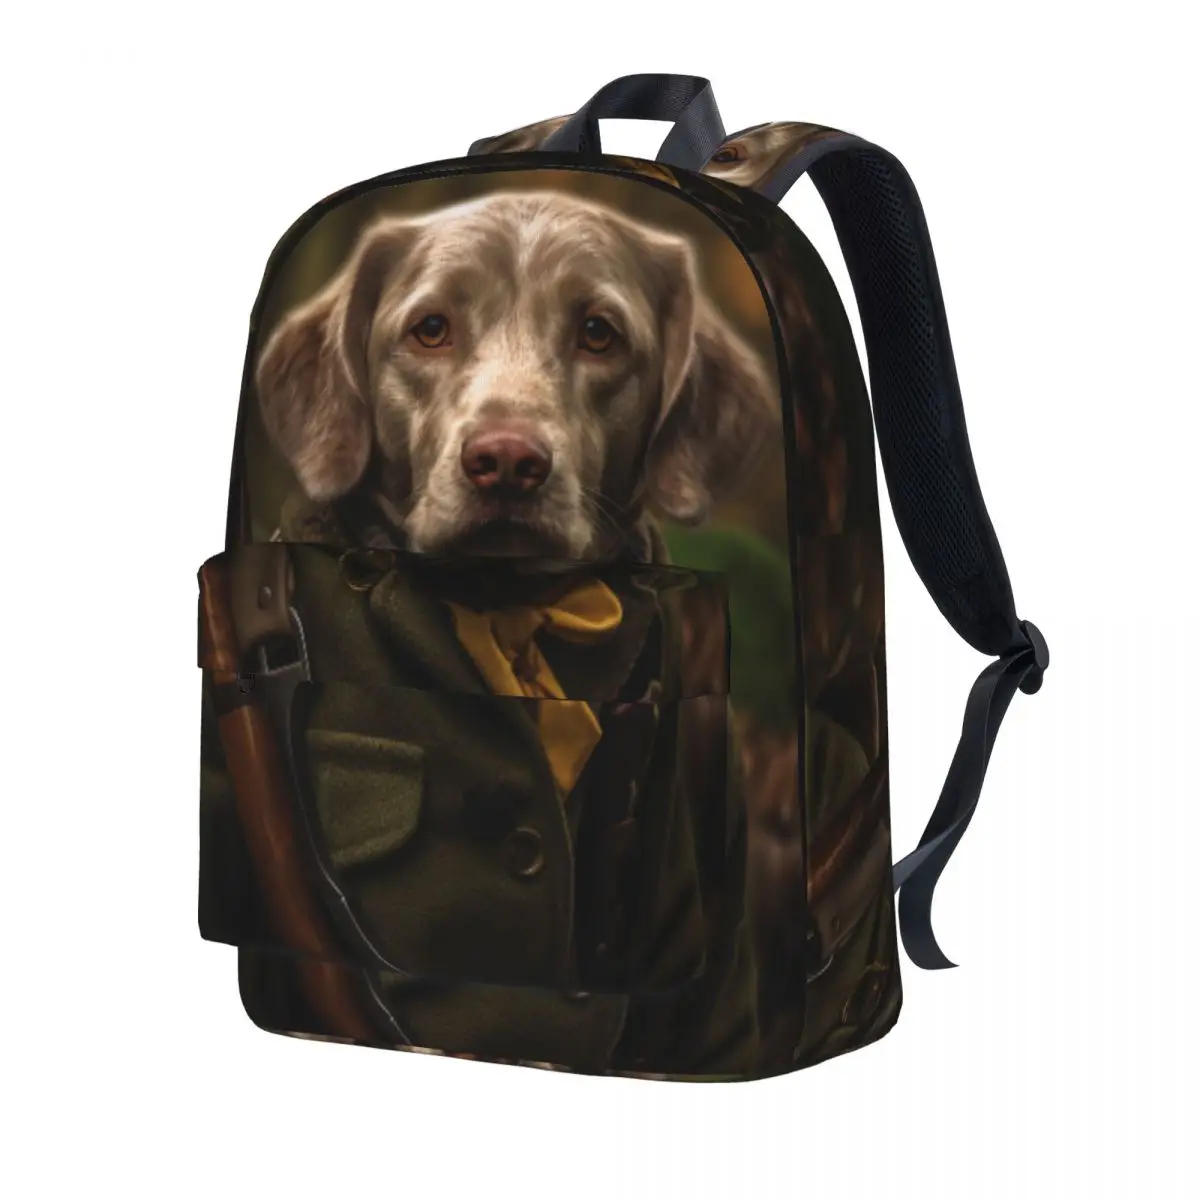 

Рюкзак для собак, Молодежные охотничьи животные, большие рюкзаки, стильные школьные сумки из полиэстера, дорожные рюкзаки высокого качества